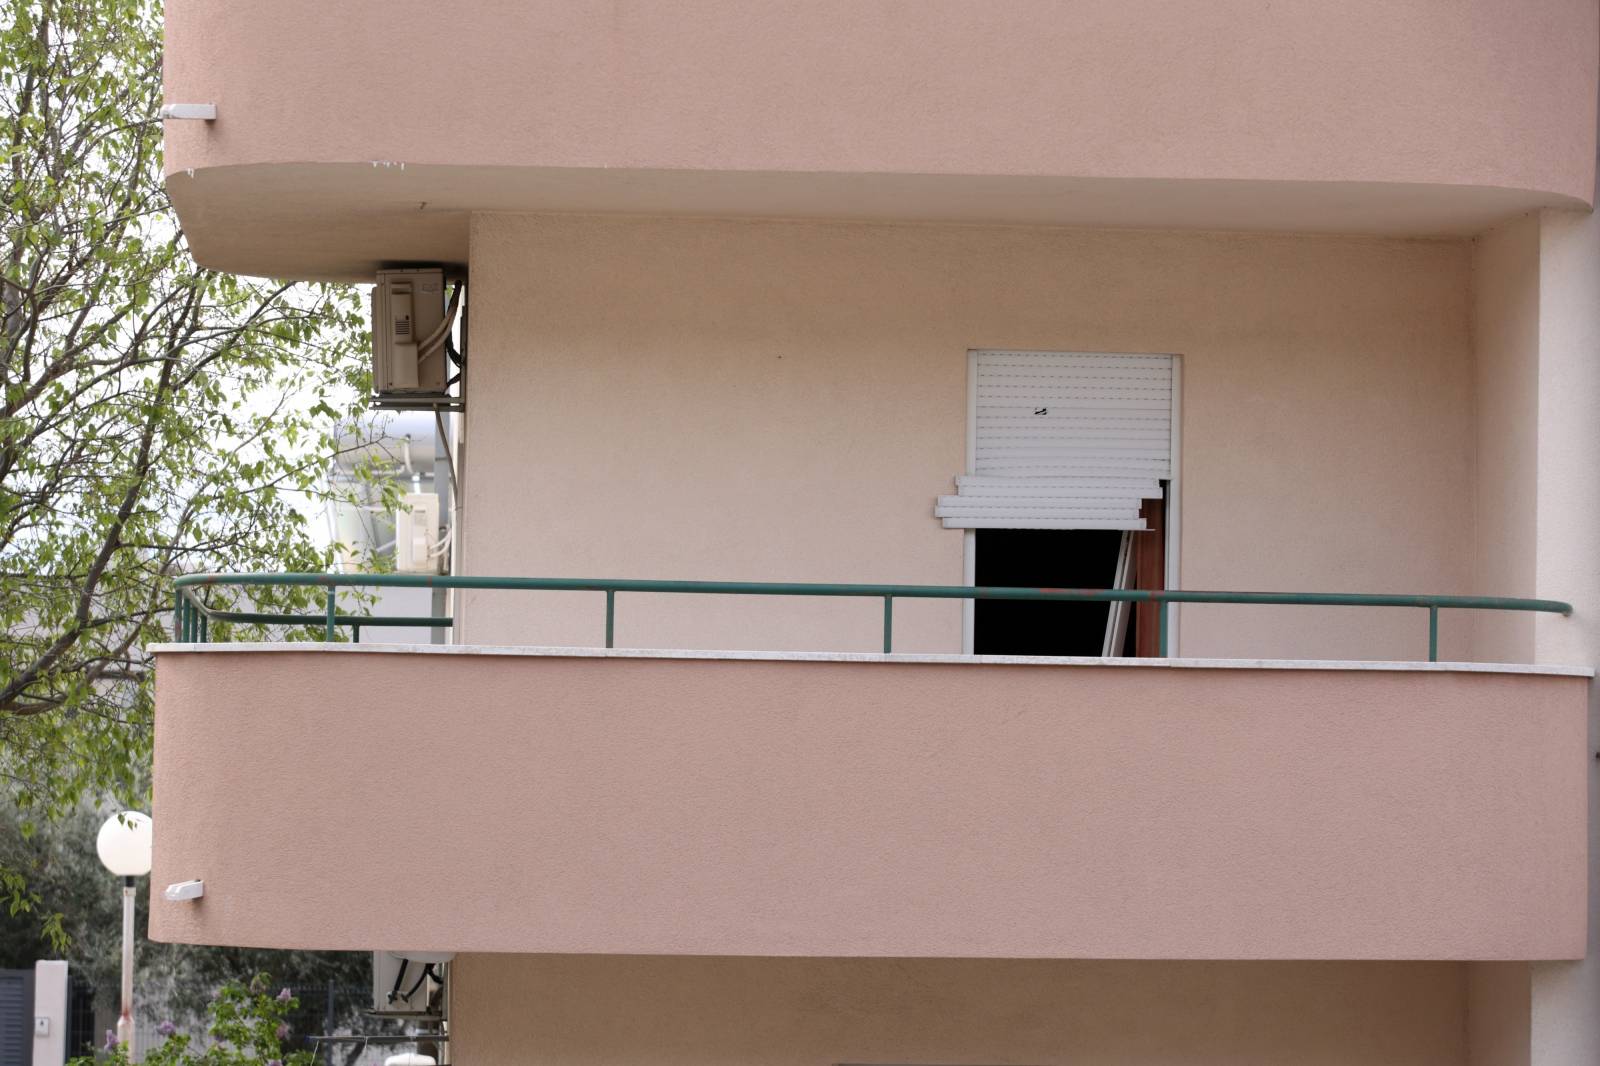 KaÅ¡tel LukÅ¡iÄ: Zgrada u kojoj je muÅ¡karac priveden zbog obiteljskog nasilja